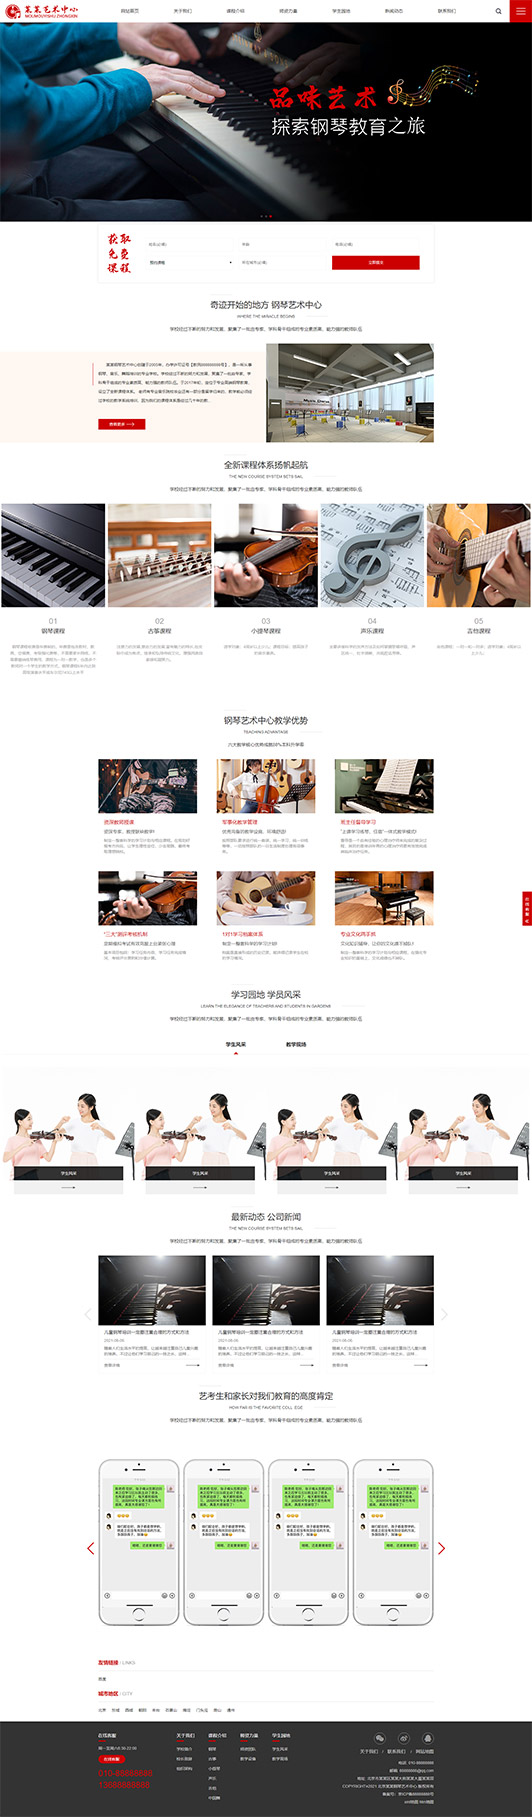 沧州钢琴艺术培训公司响应式企业网站